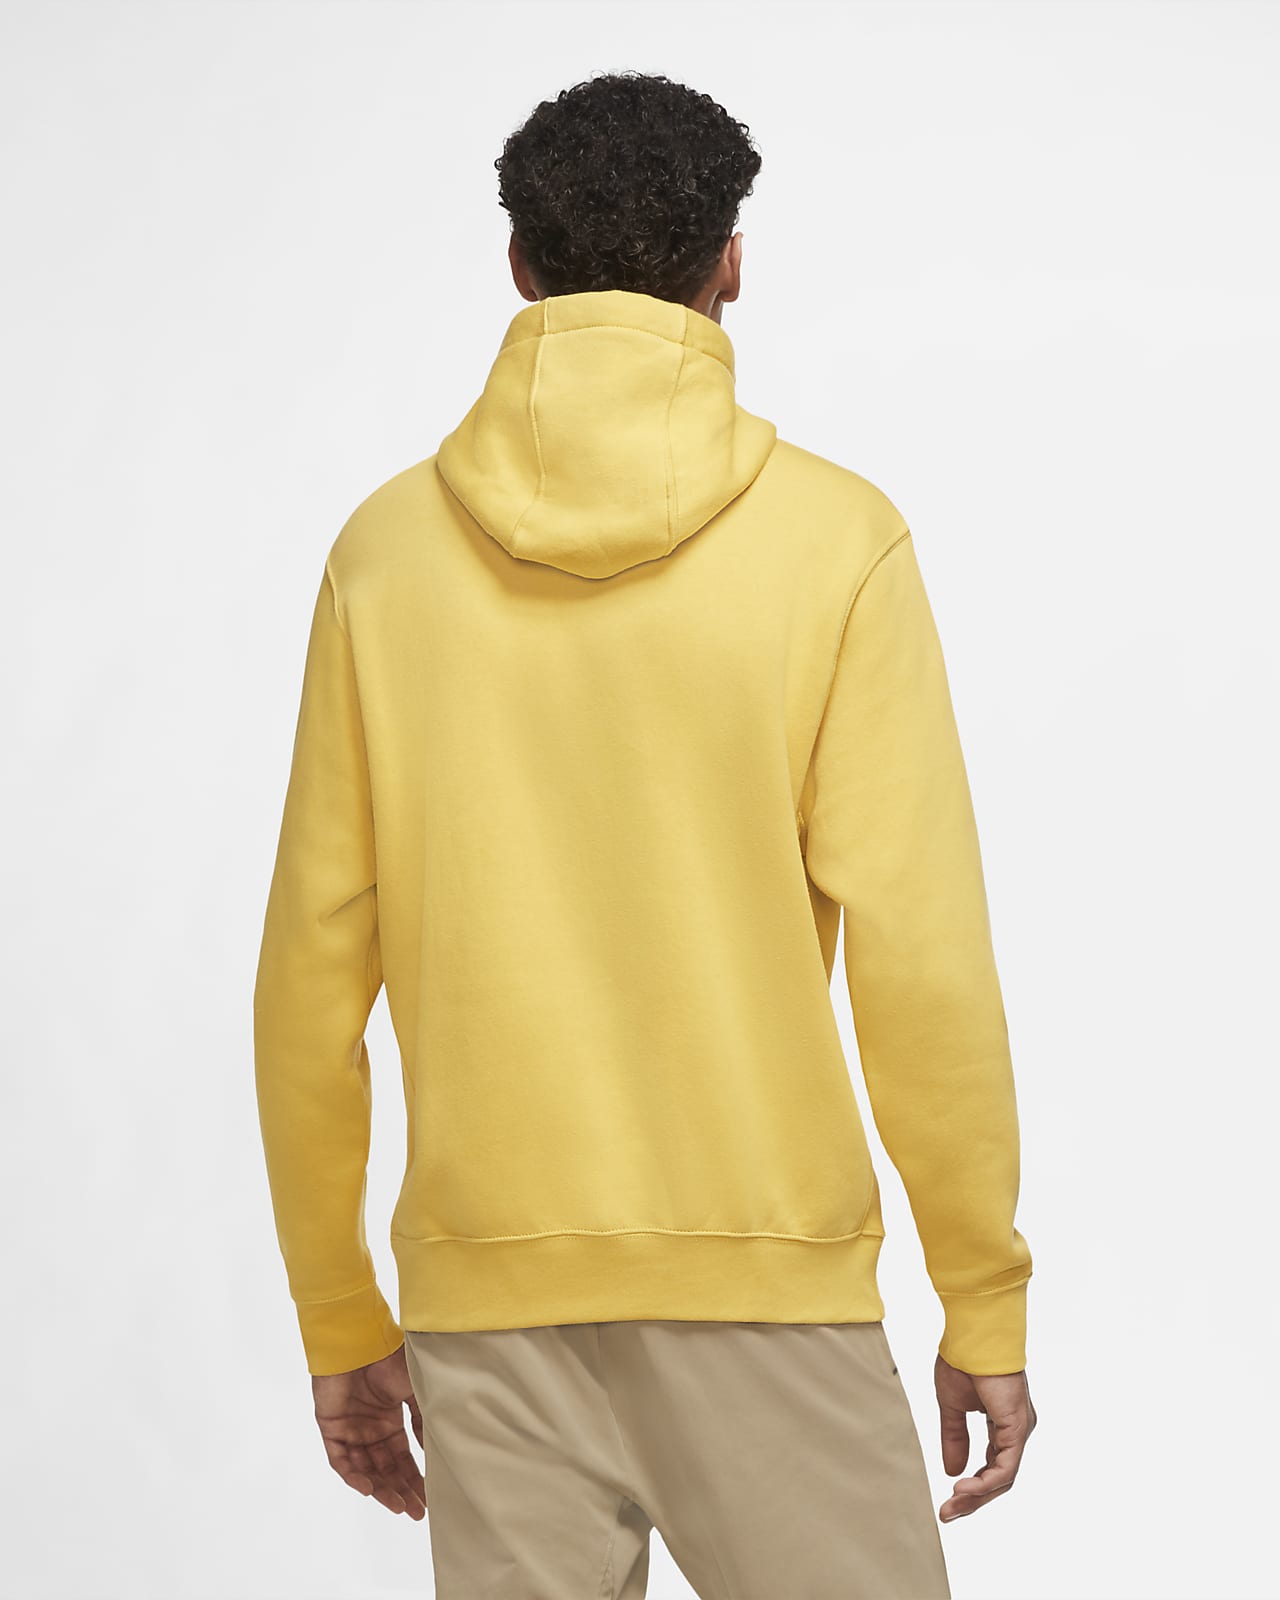 nike yellow fleece hoodie